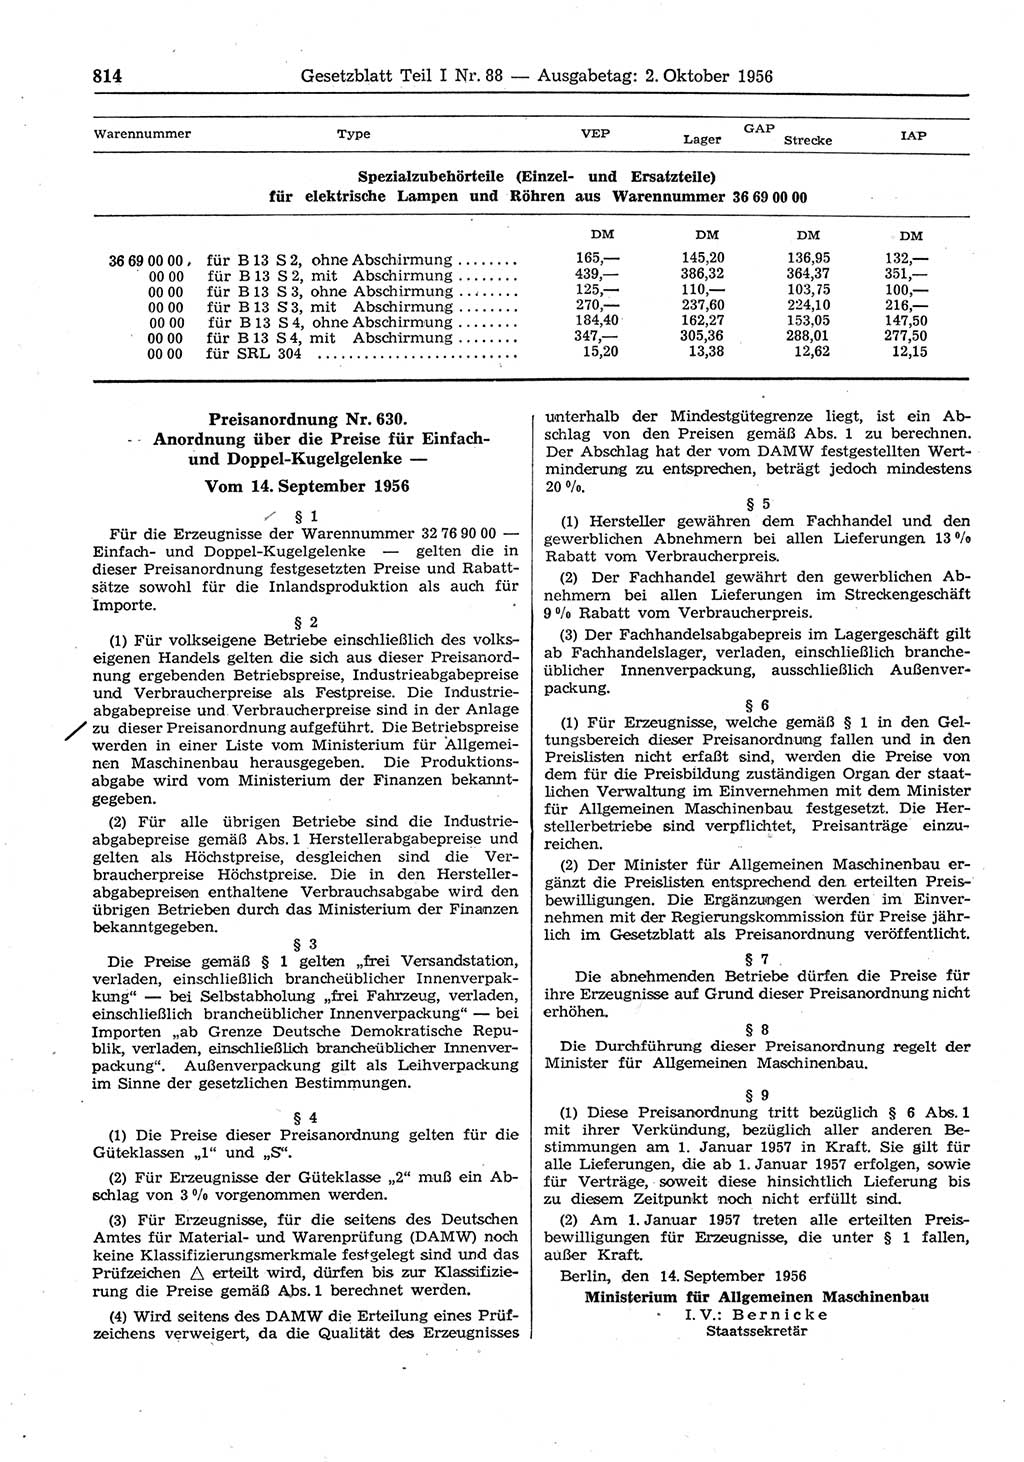 Gesetzblatt (GBl.) der Deutschen Demokratischen Republik (DDR) Teil Ⅰ 1956, Seite 814 (GBl. DDR Ⅰ 1956, S. 814)